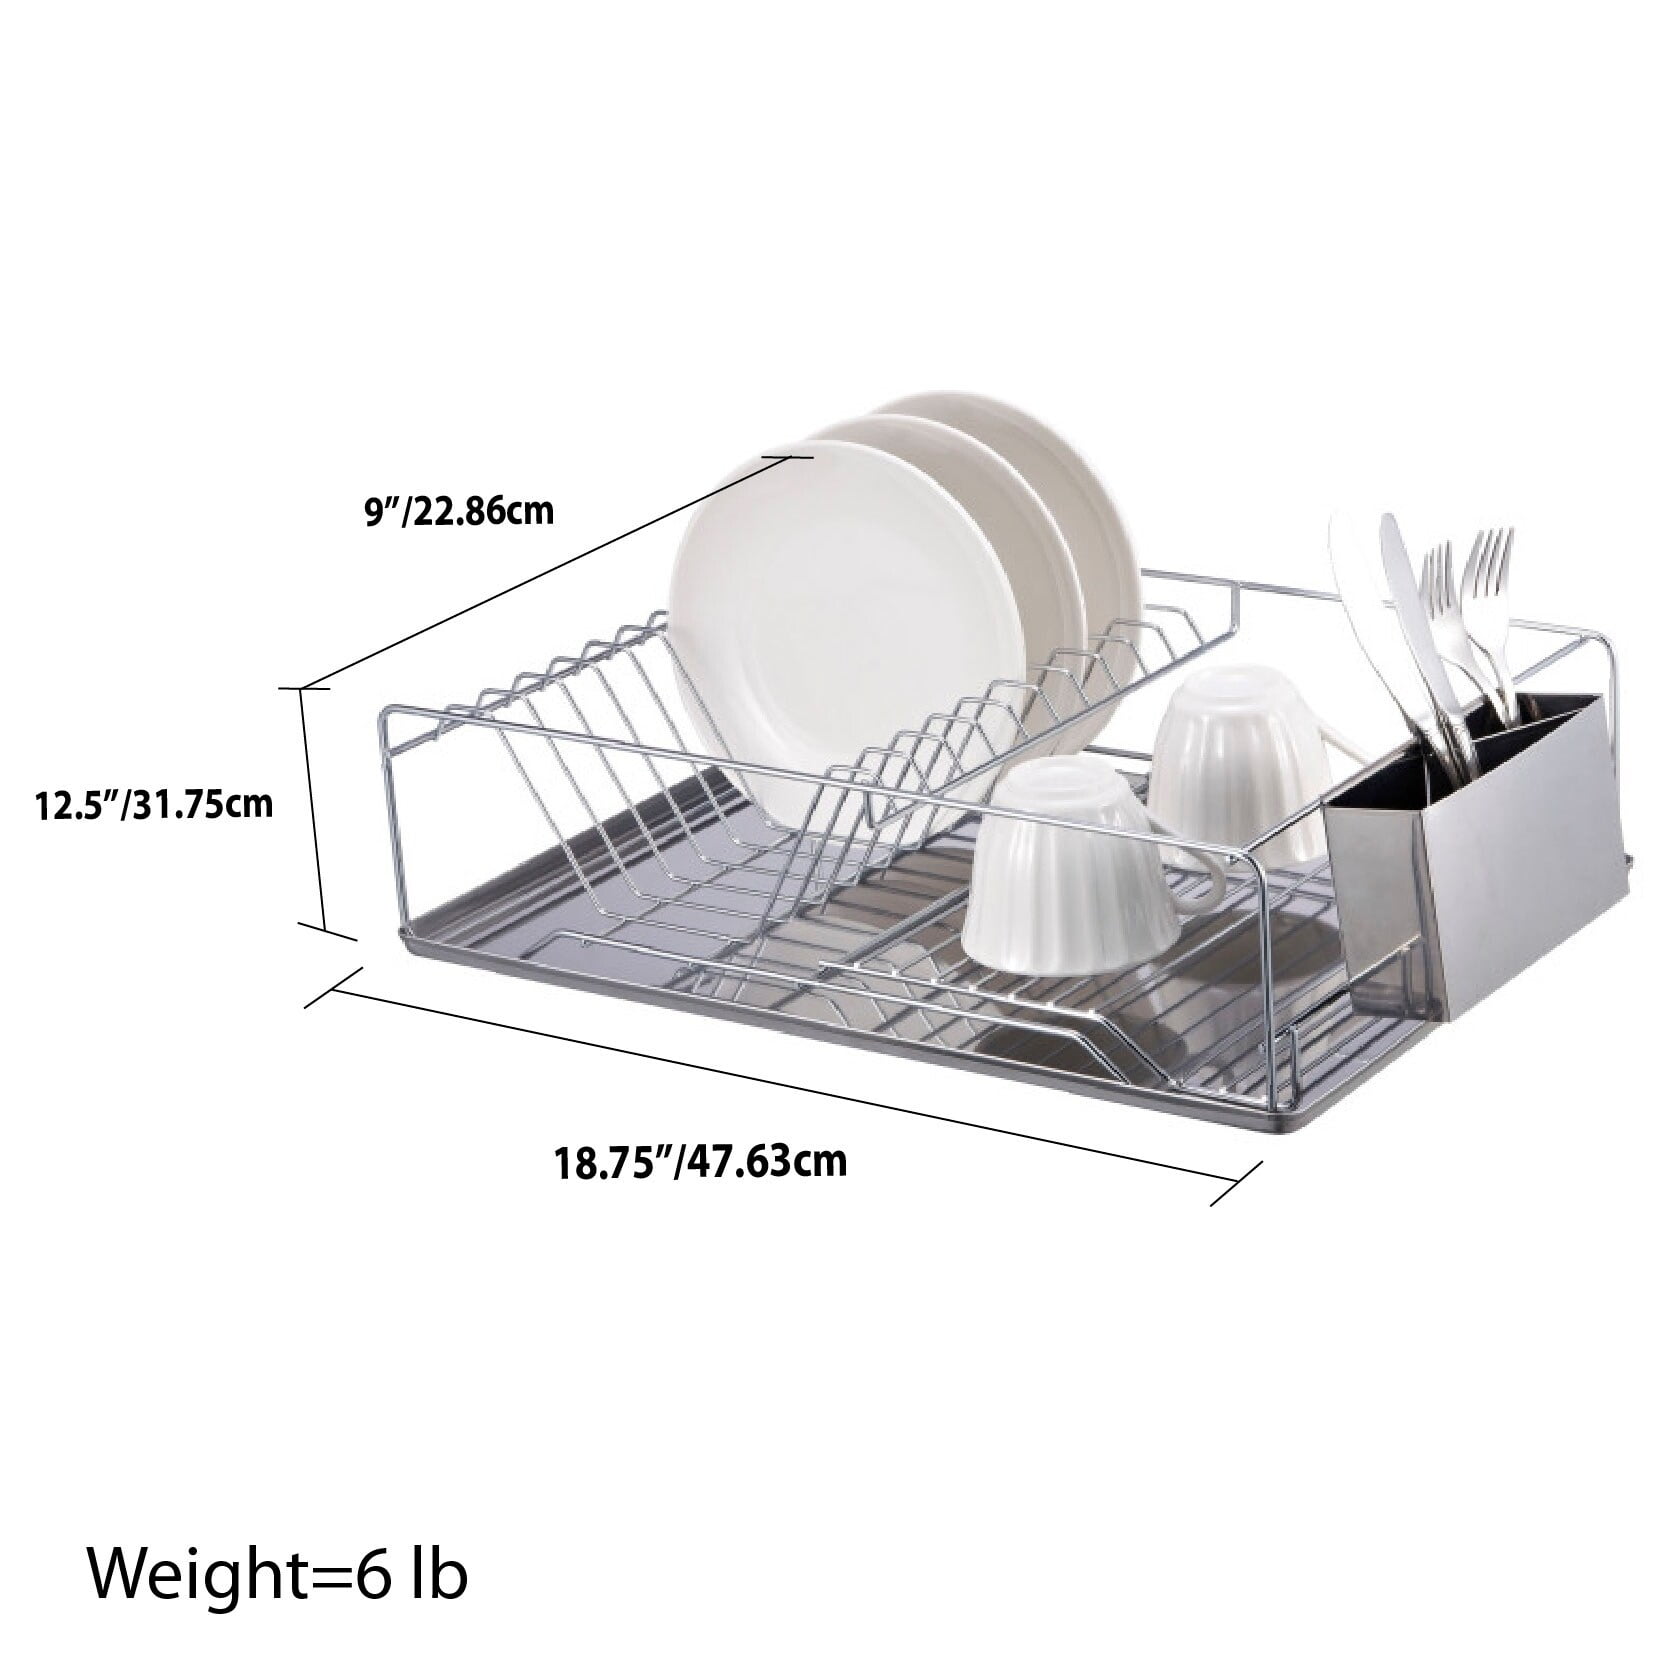 Home Basics 12.75-in W x 20.25-in L x 5-in H Steel Dish Rack and